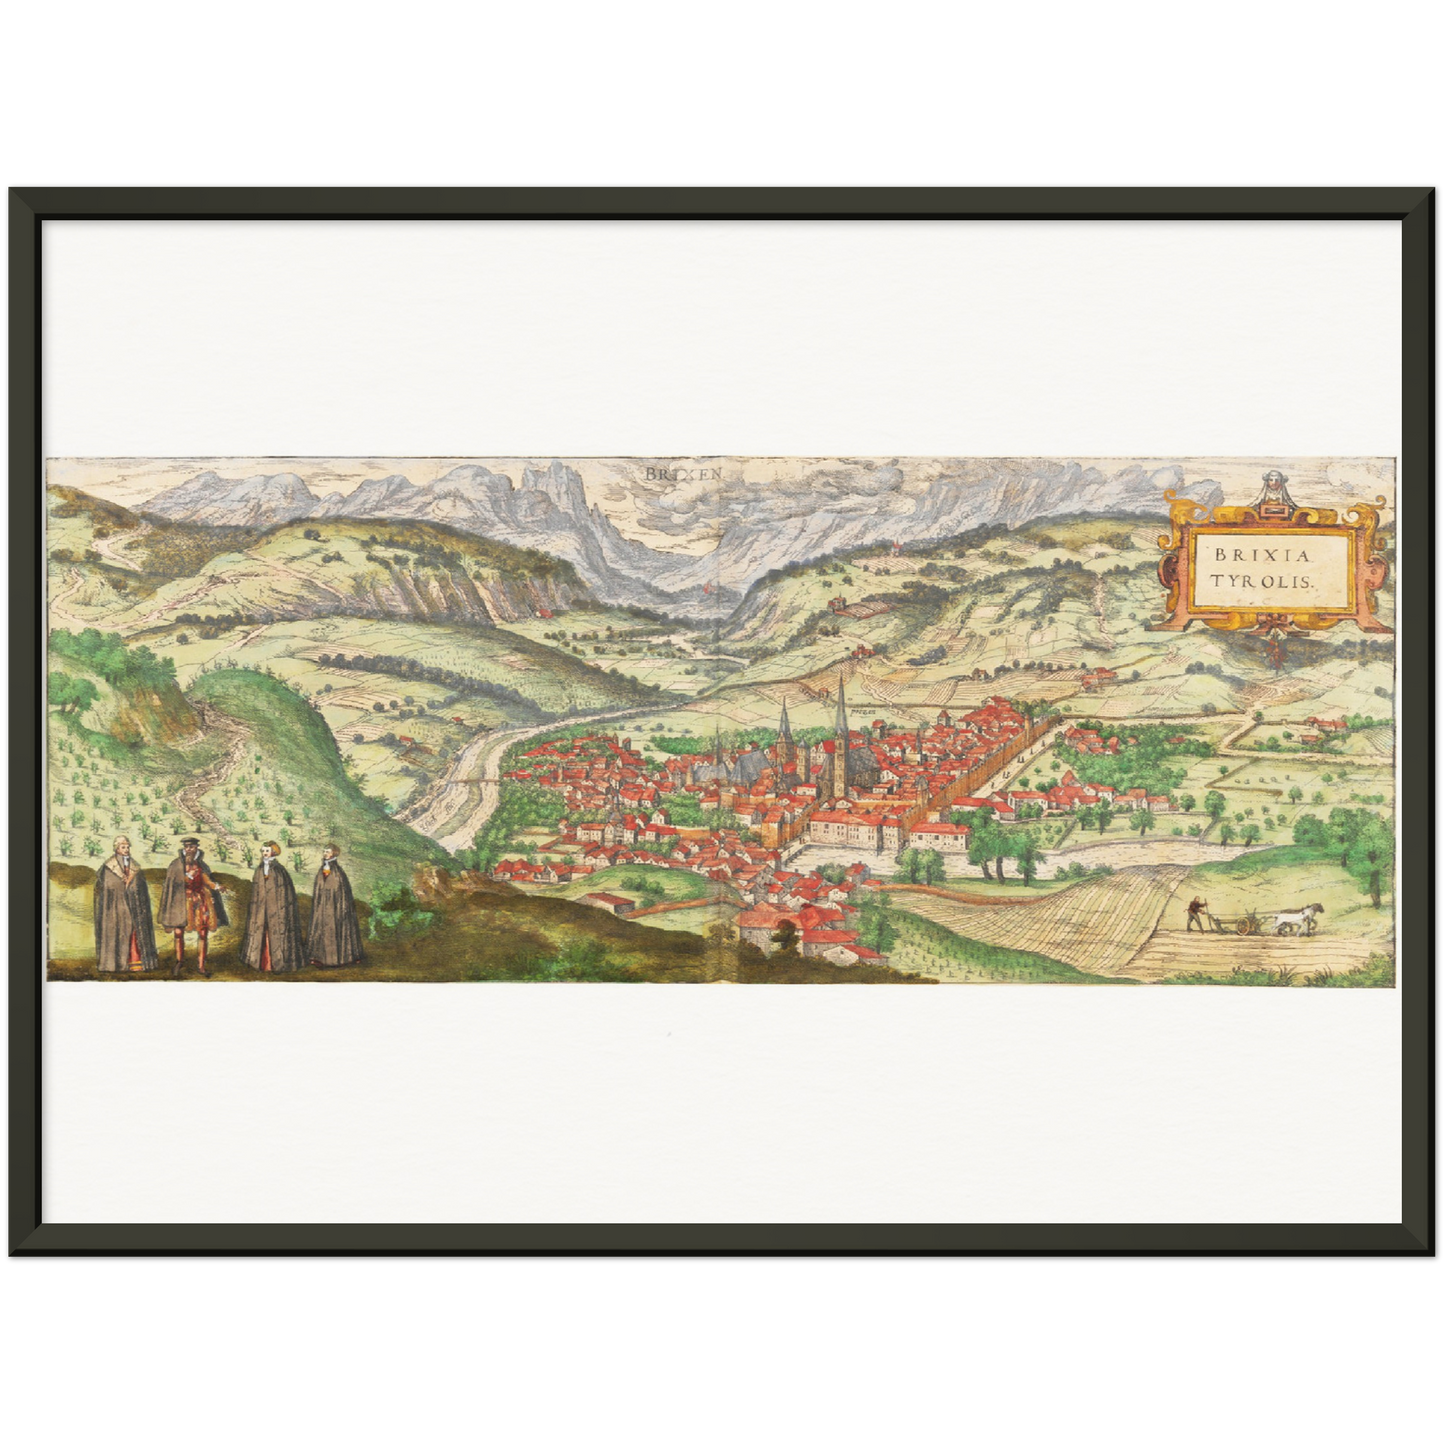 Historische Stadtansicht Brixen um 1592